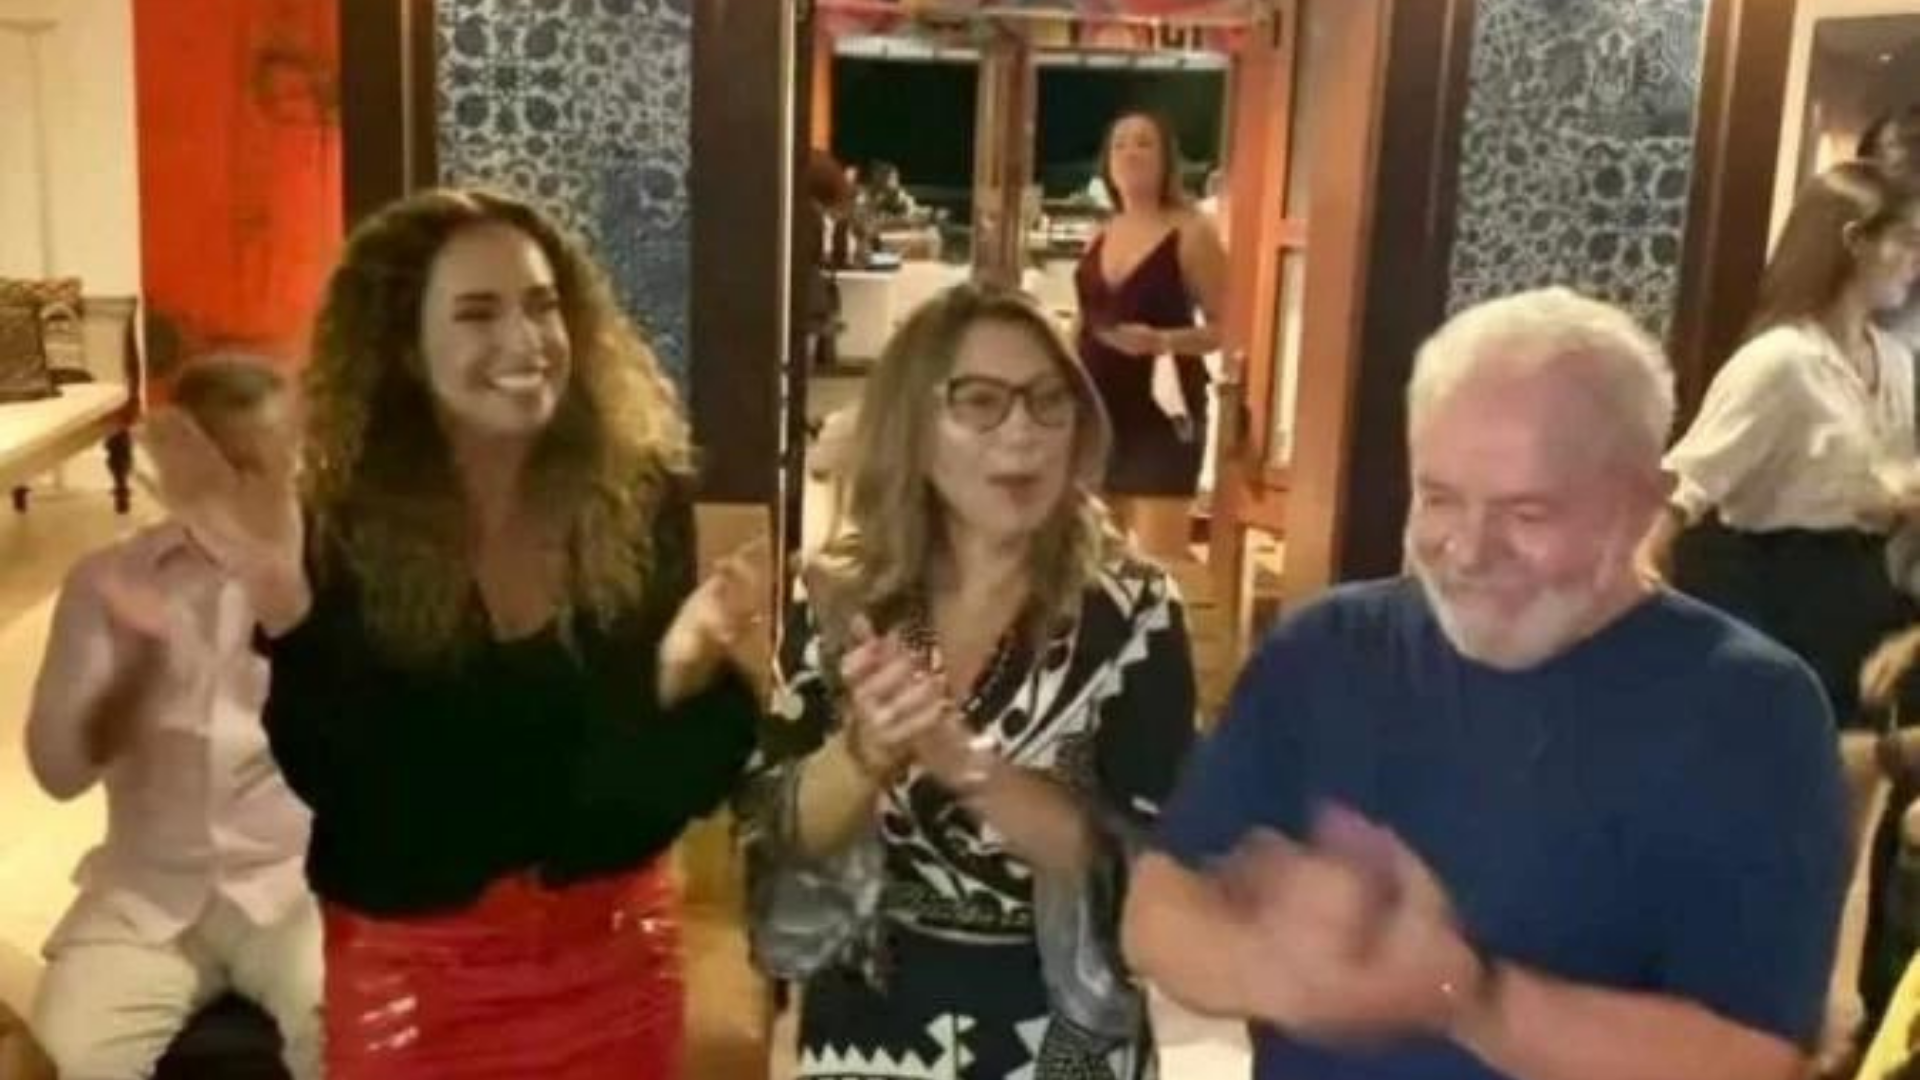 Lula dança ao lado de Daniela Mercury. O ex-presidente aparece em foto com uma camisa azul, ao lado de Daniela Mercury e Janja, que estão sorrindo e dançando no terraço da casa.